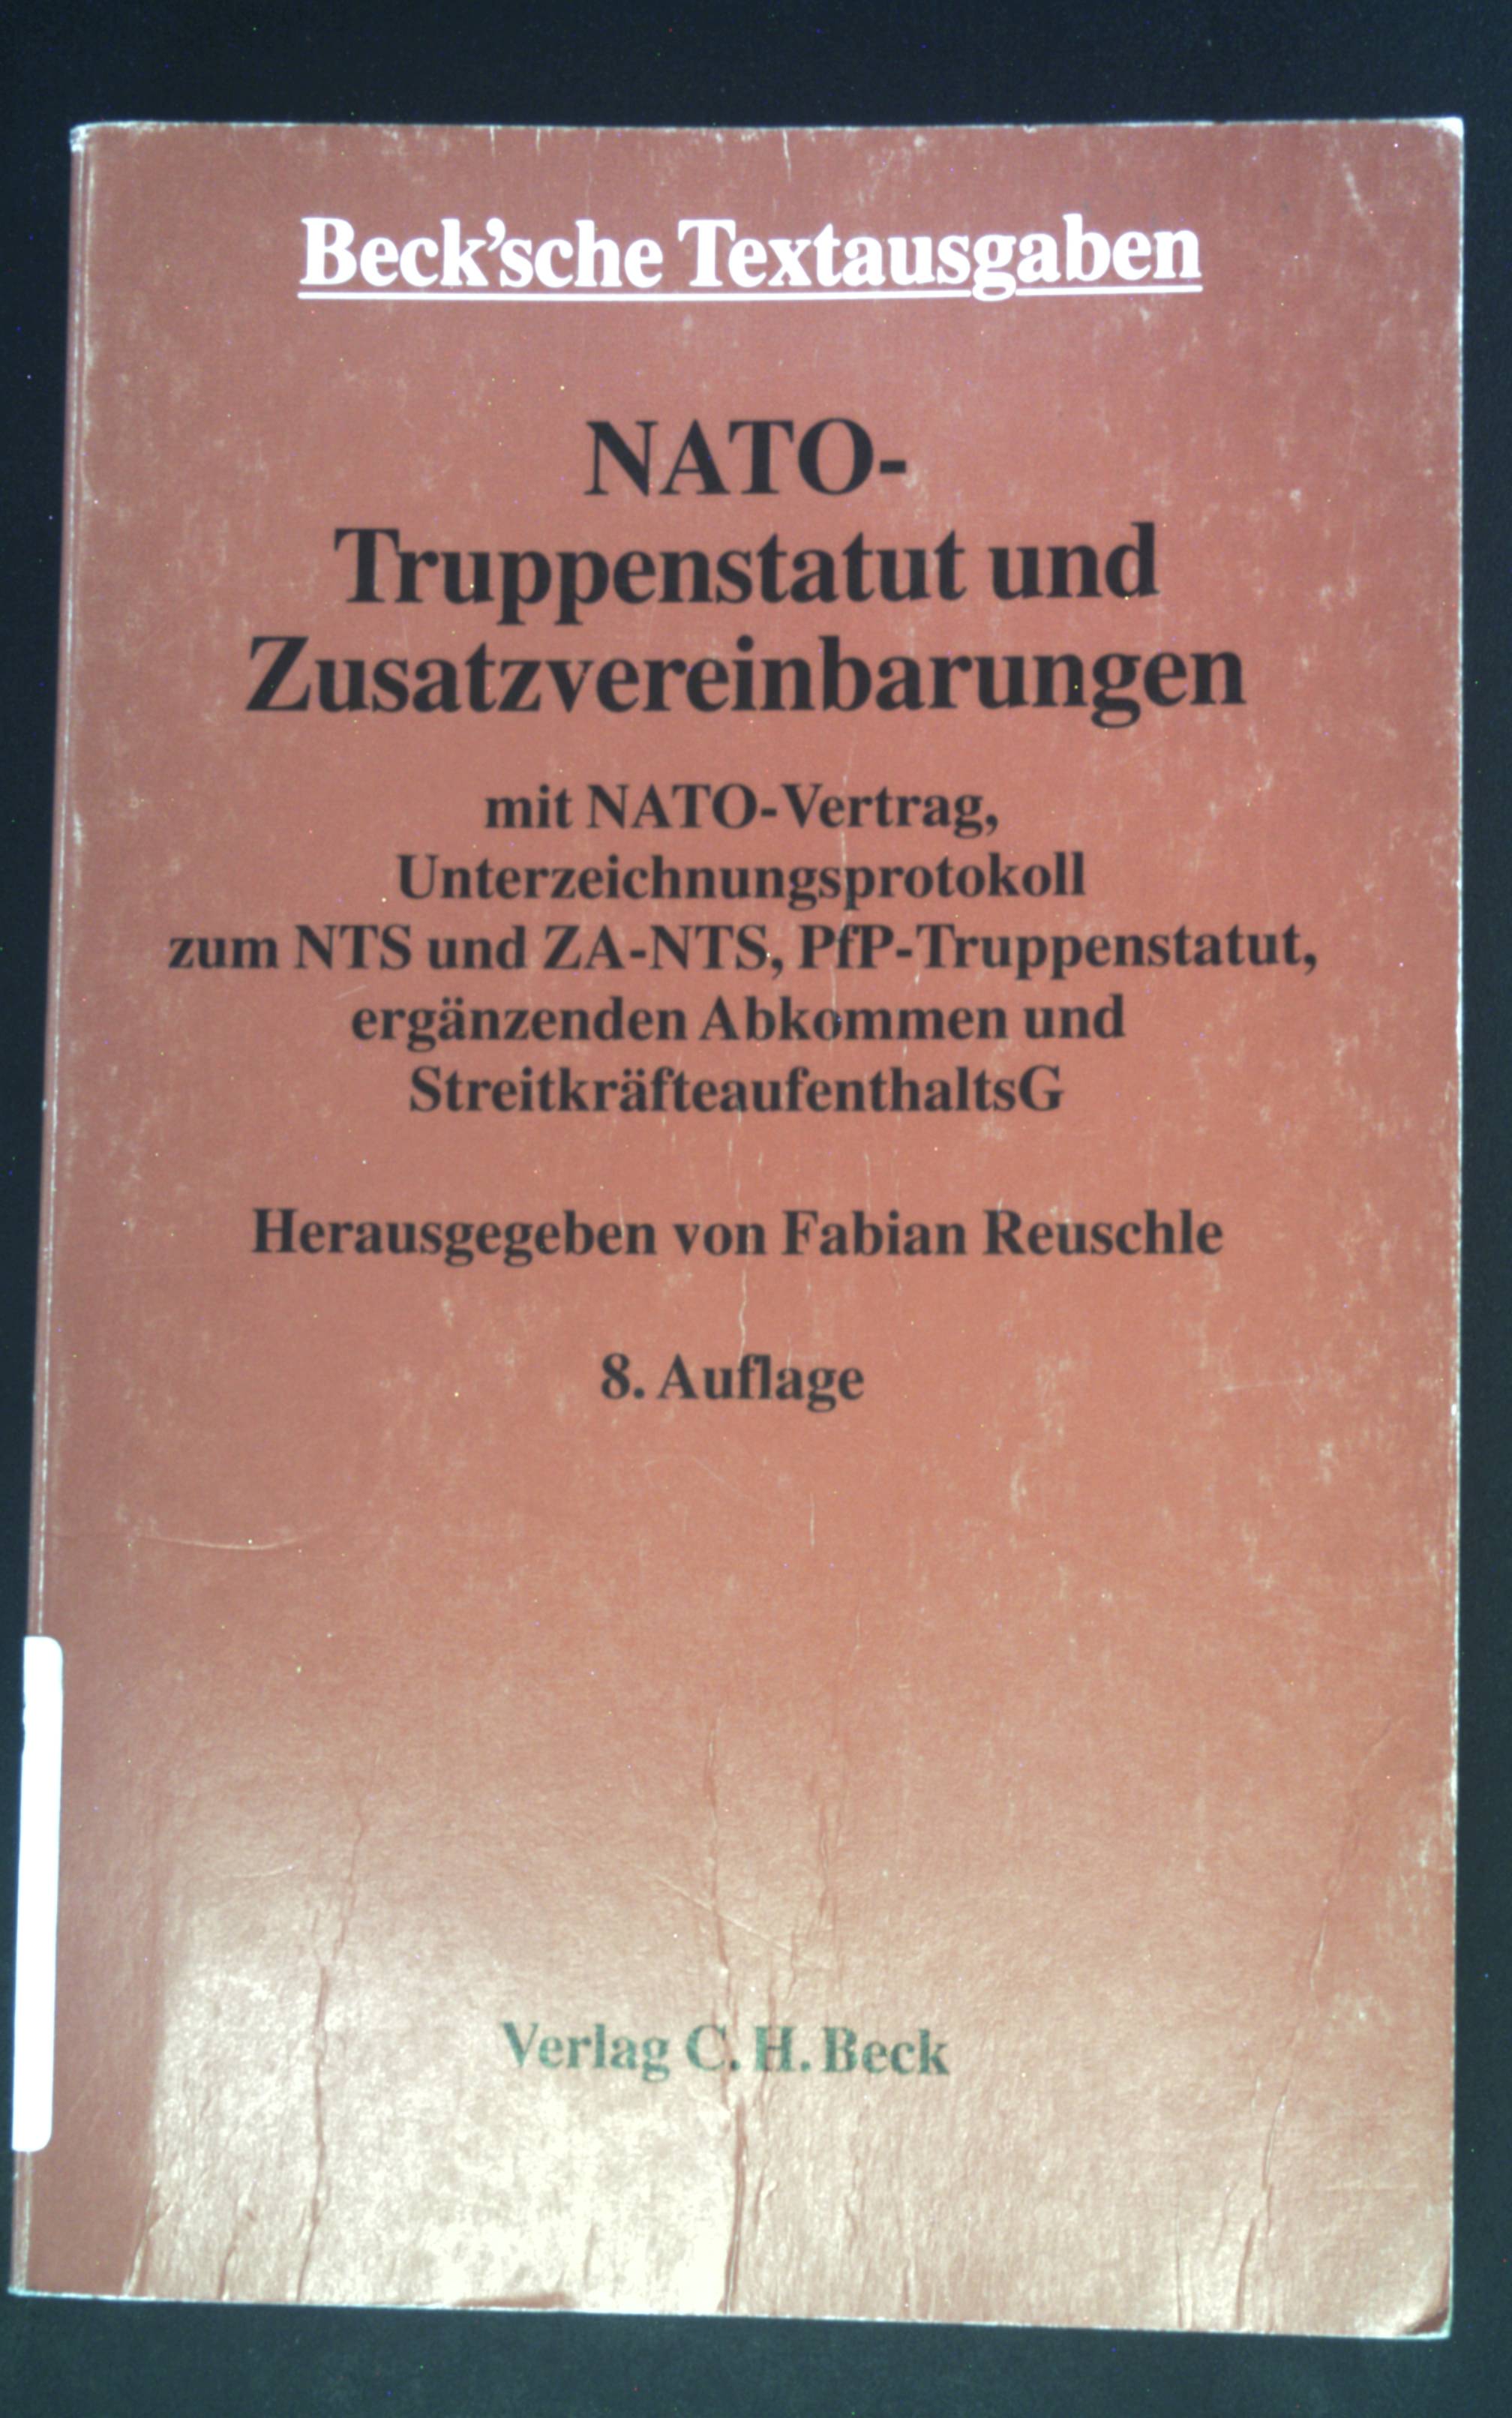 NATO-Truppenstatut und Zusatzvereinbarungen; NATO-Vertrag. Beck'sche Textausgaben 8. Aufl. - Reuschle, Fabian